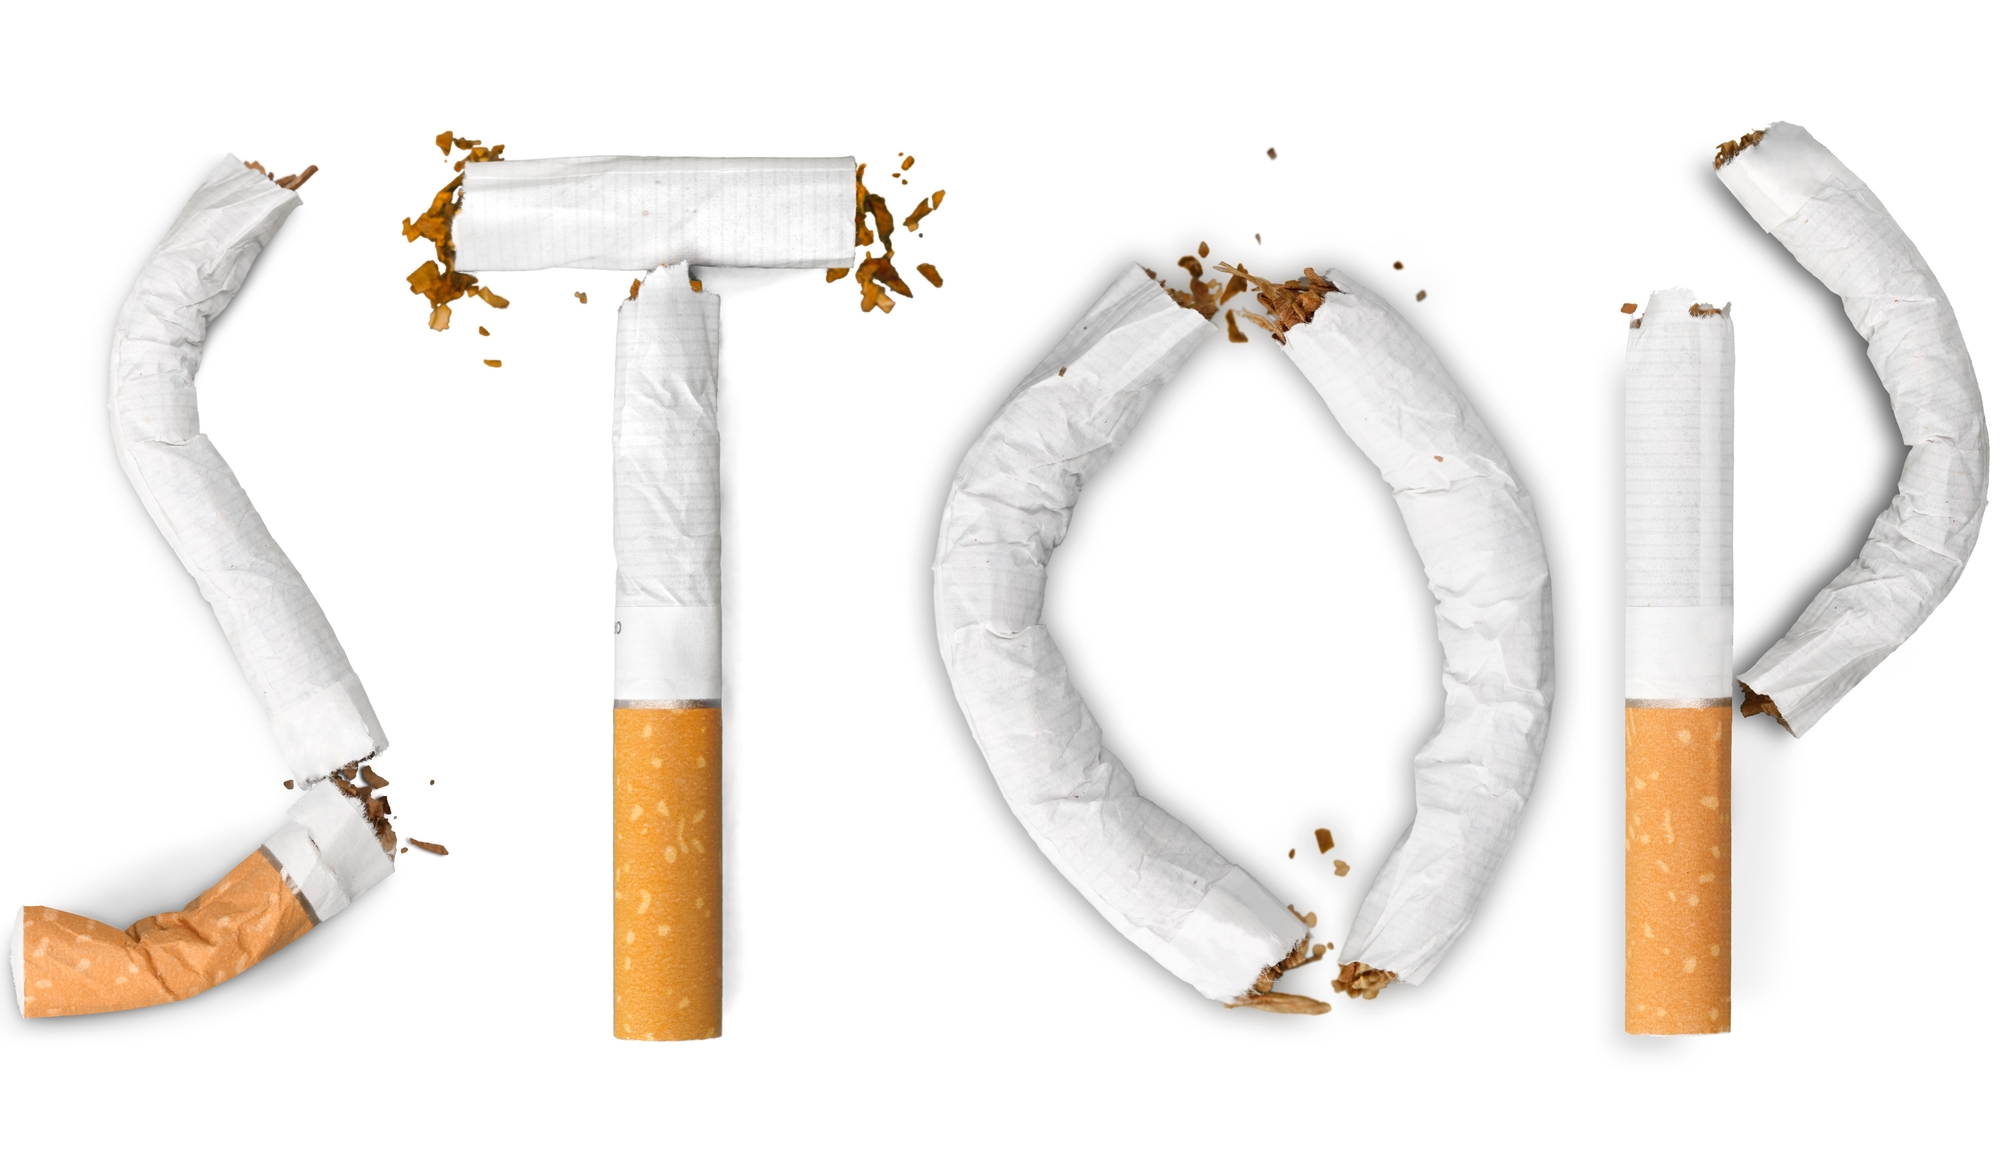 Riflessione sul fumo, rischi e strategie per smettere